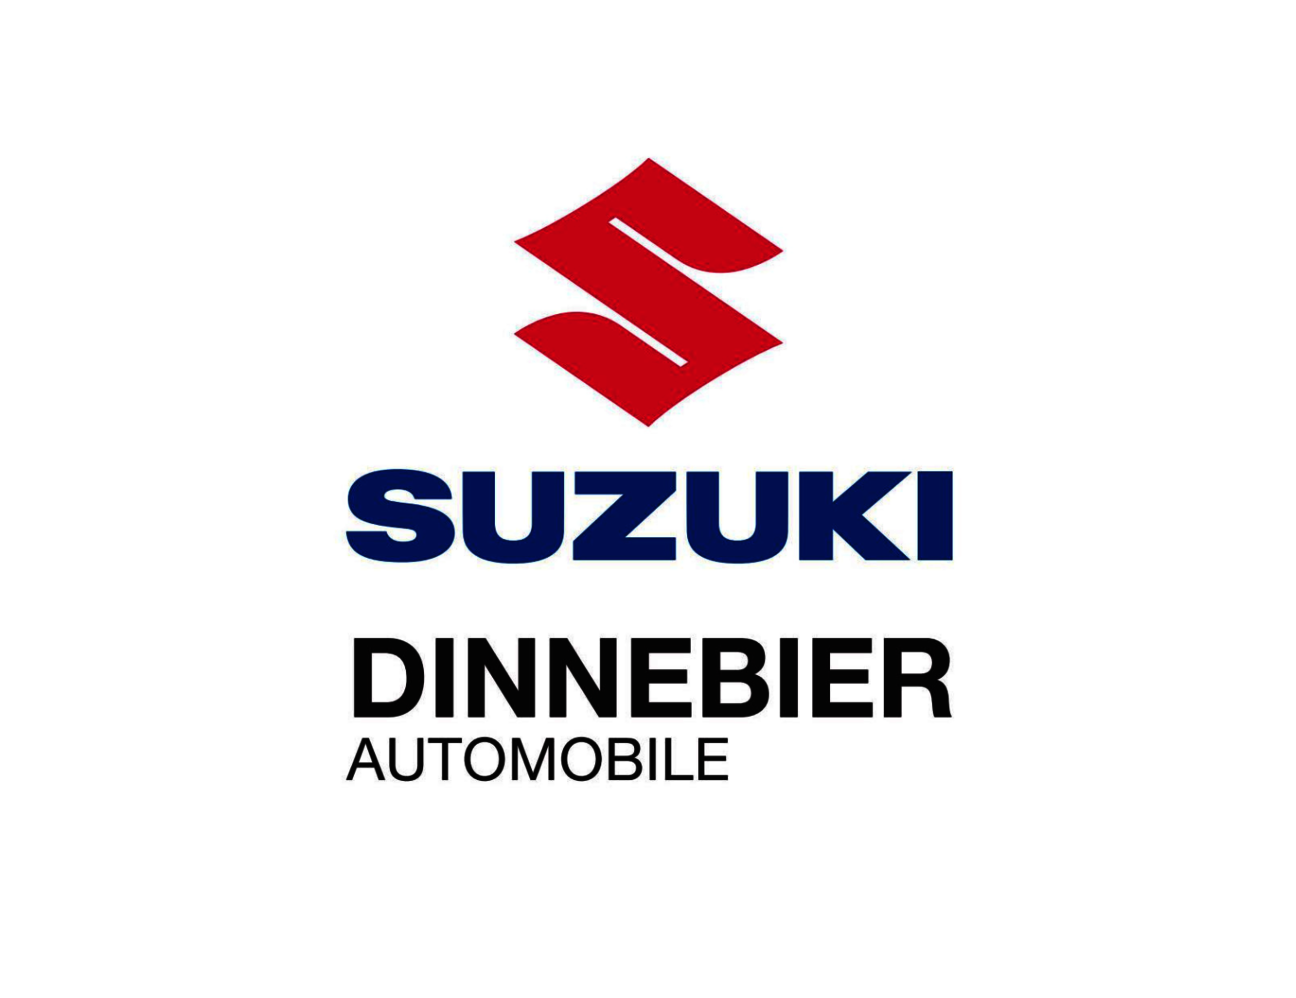 Suzuki_Dinnebier_logo